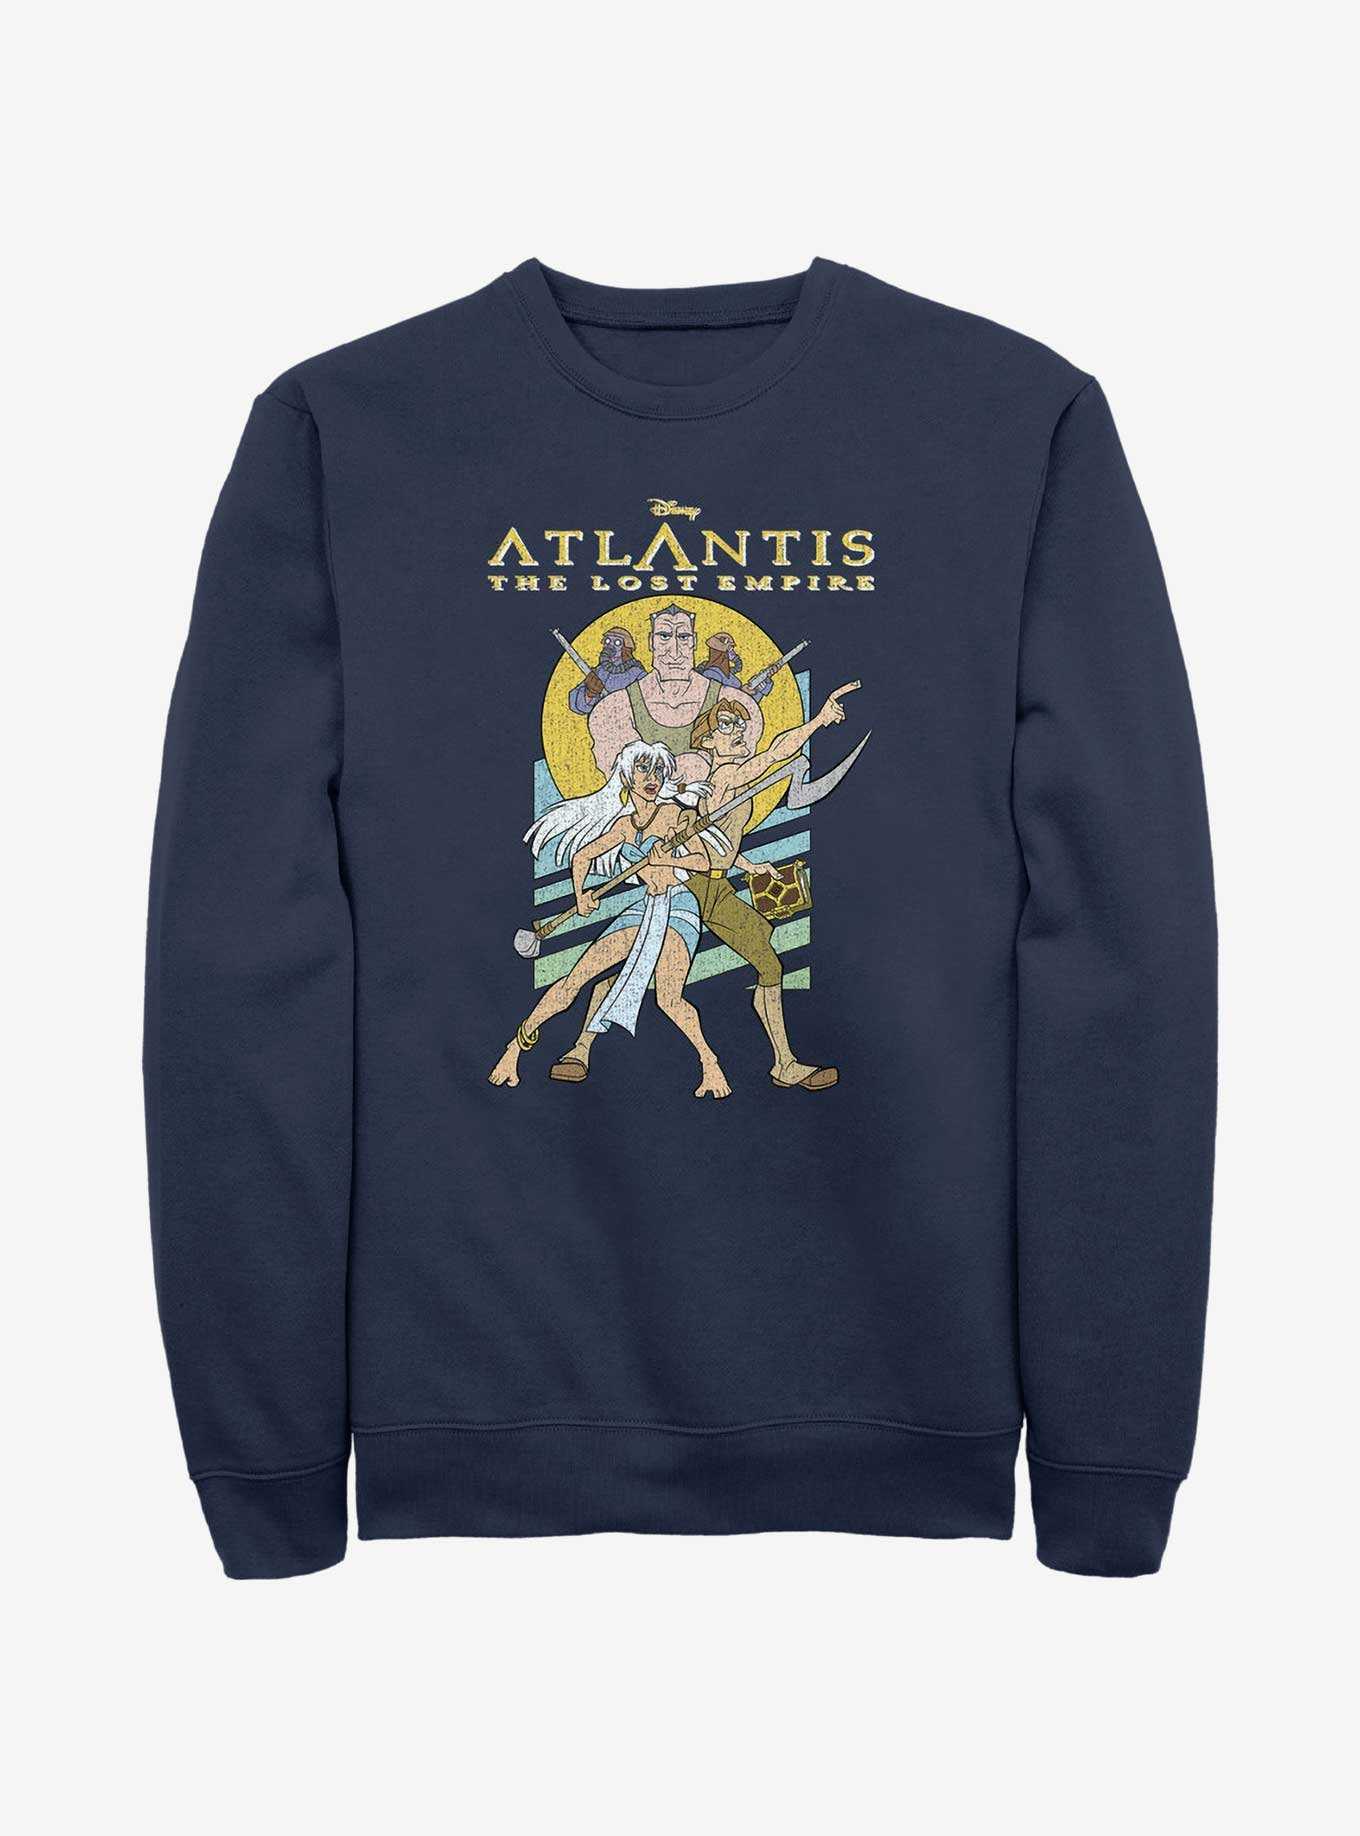 Disney Atlantis: The Lost Empire Protectors Kida and Milo Sweatshirt, , hi-res